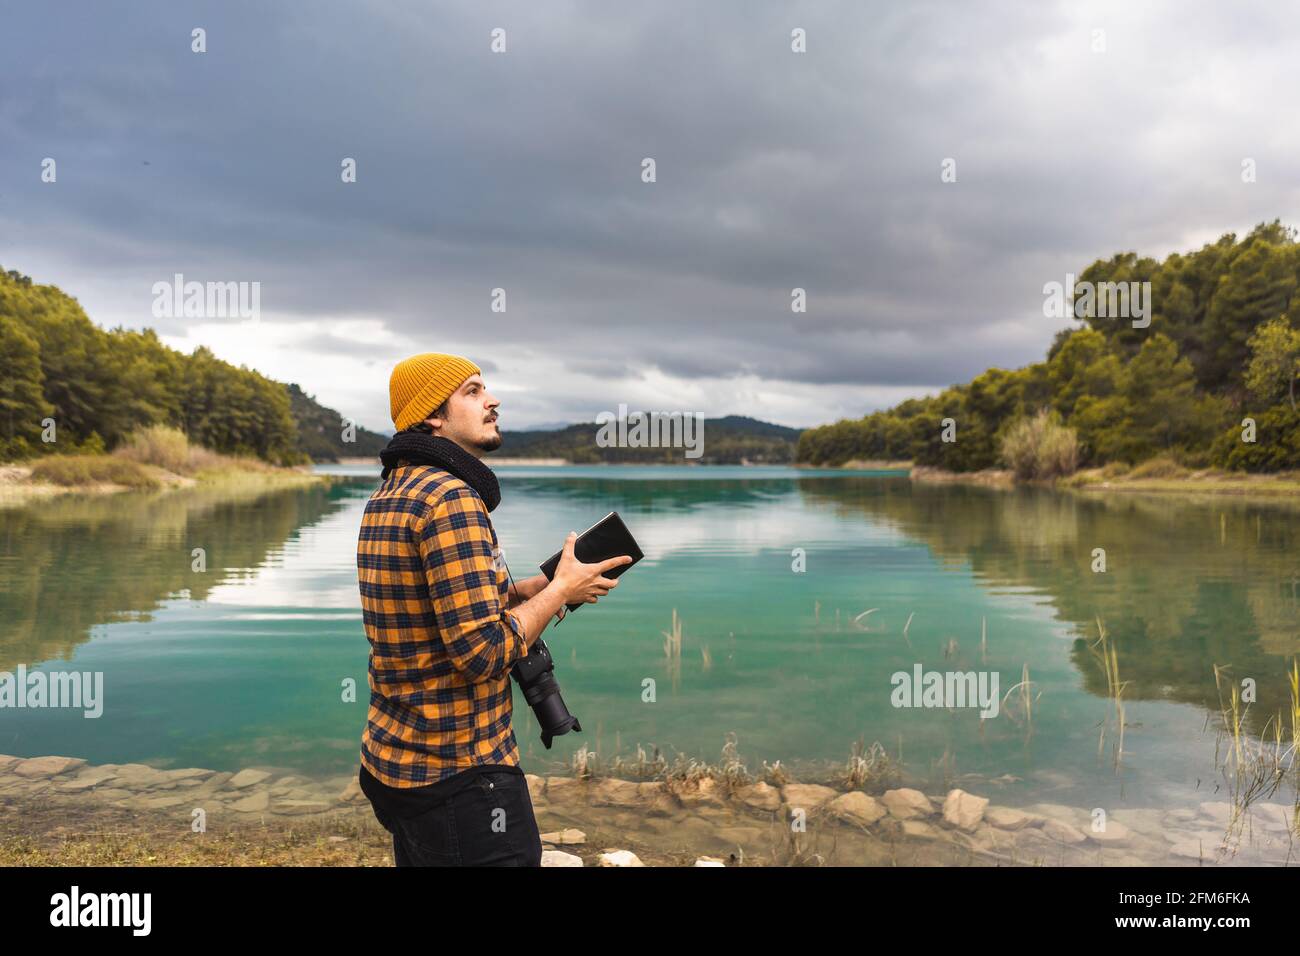 Guida turistica che branda la guida con cappello e macchina fotografica il lago Foto Stock